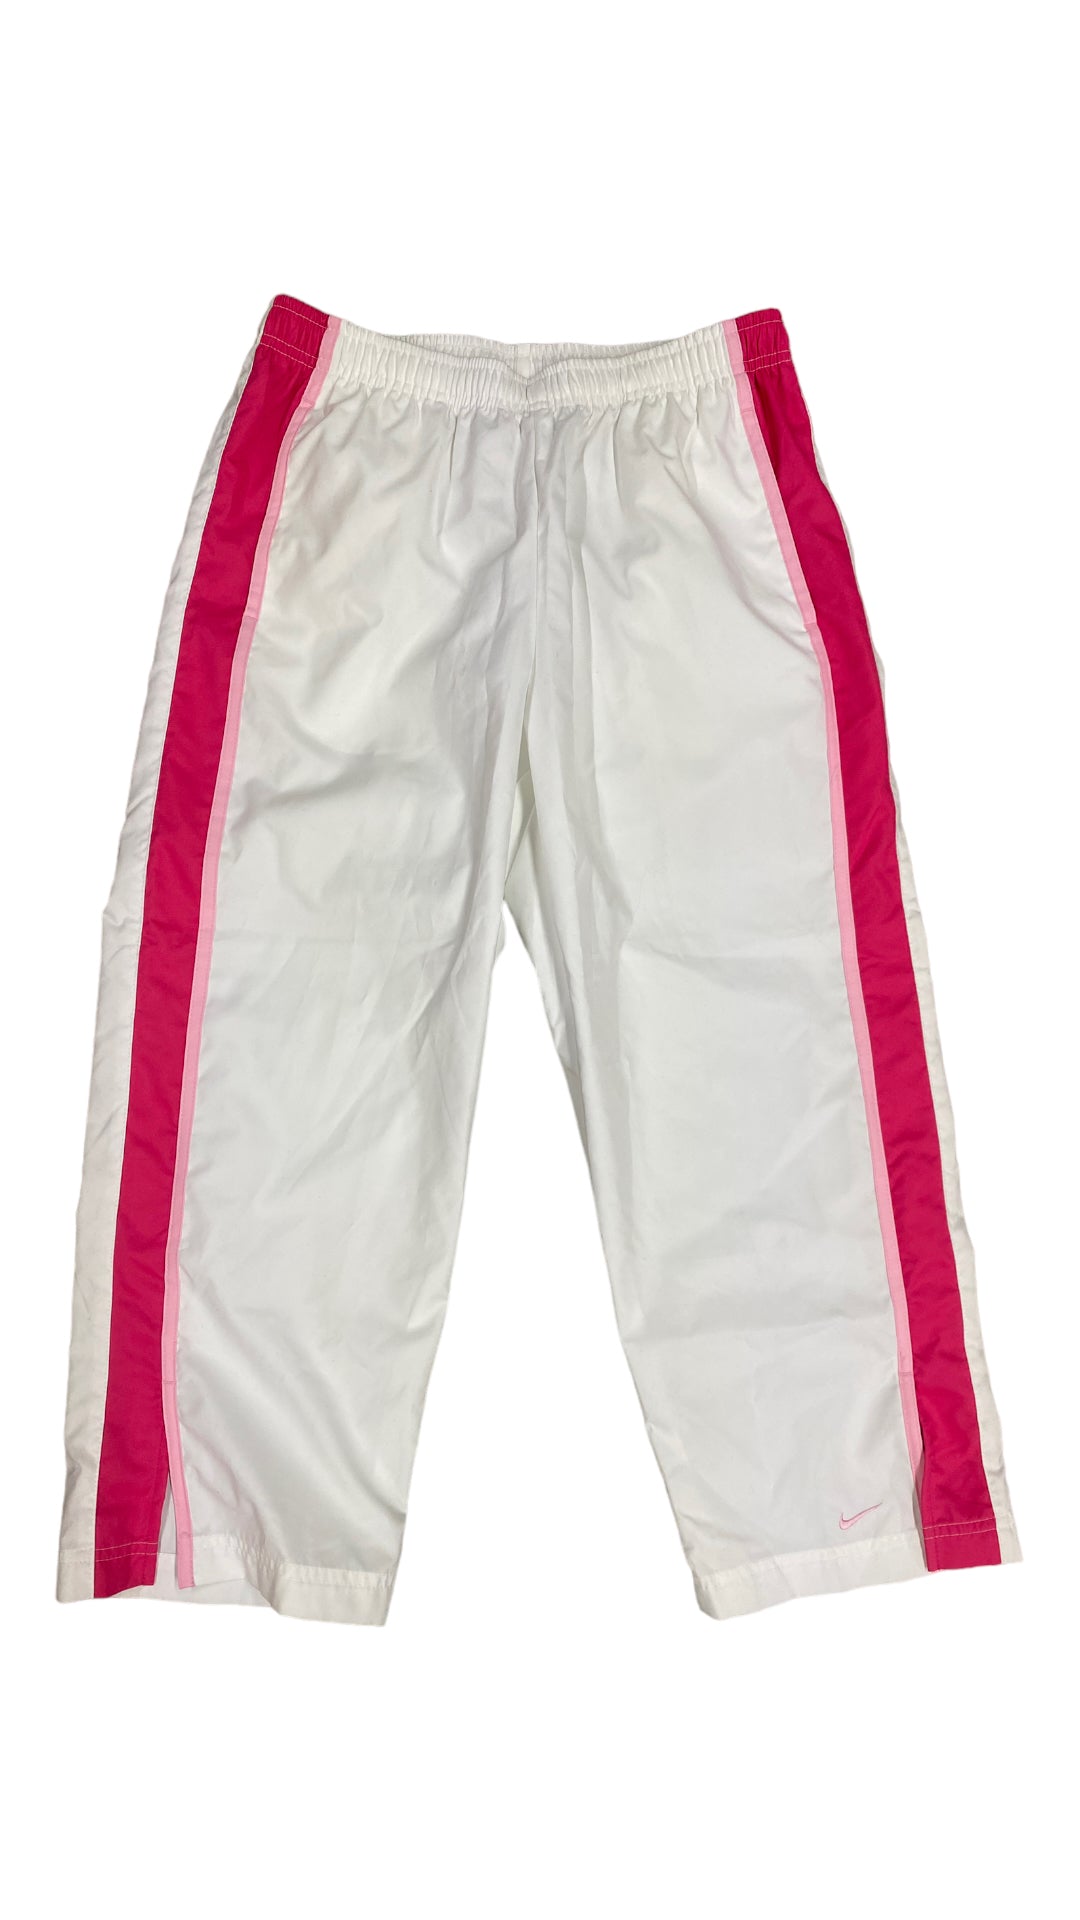 VTG Pink/White Nike Poly Capri Pants Sz M